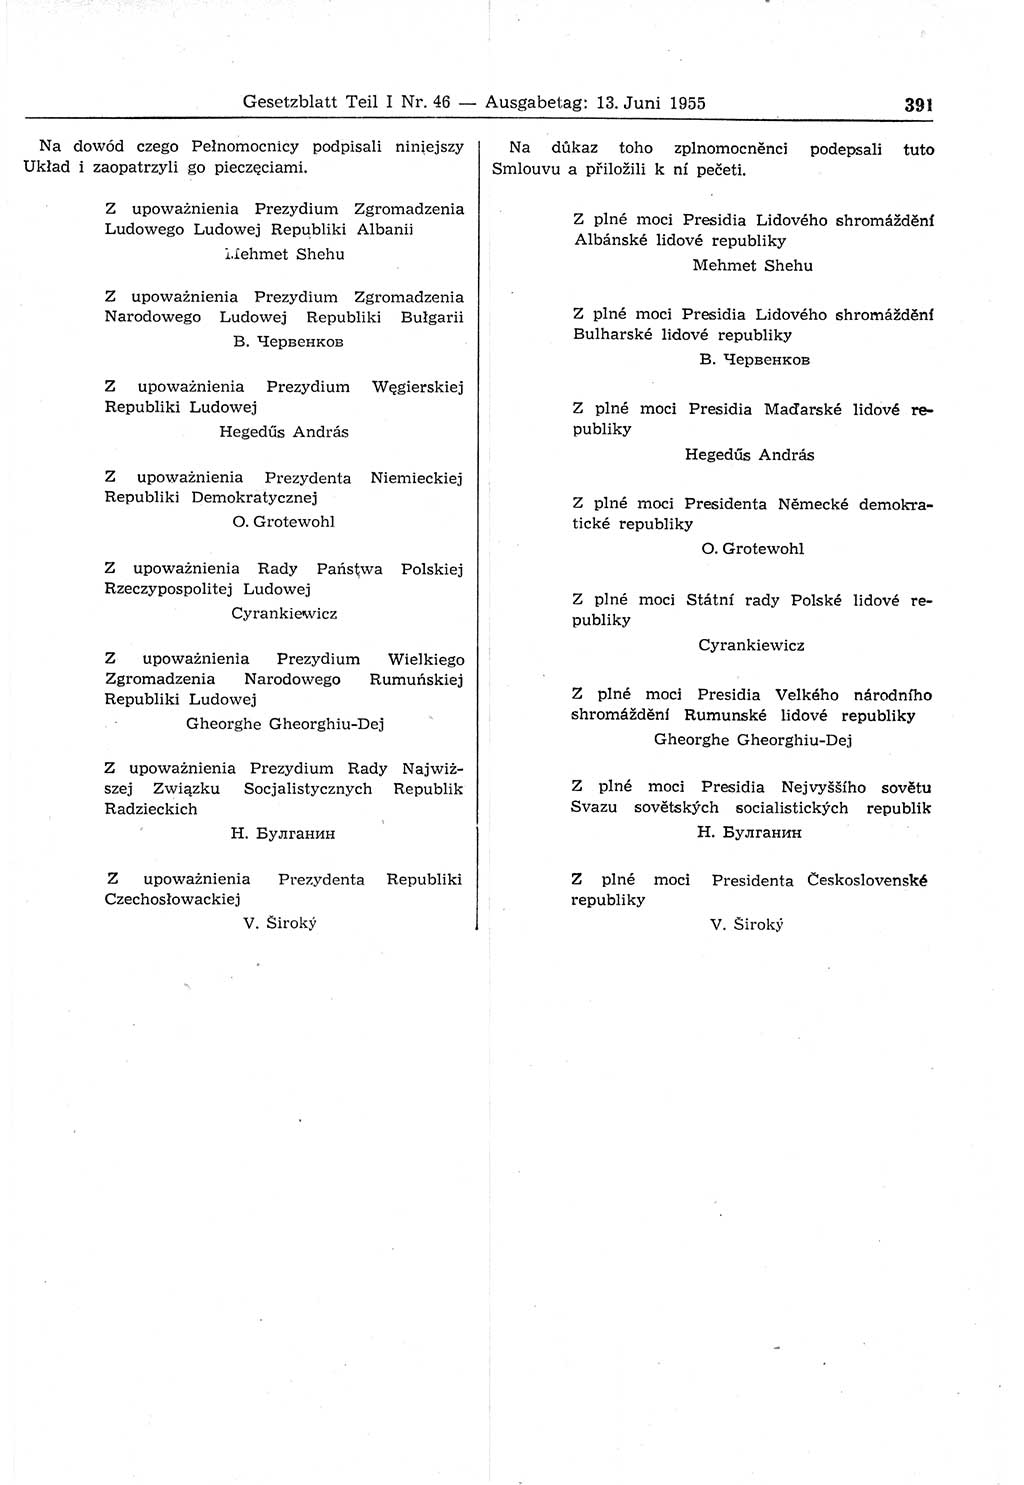 Gesetzblatt (GBl.) der Deutschen Demokratischen Republik (DDR) Teil Ⅰ 1955, Seite 391 (GBl. DDR Ⅰ 1955, S. 391)